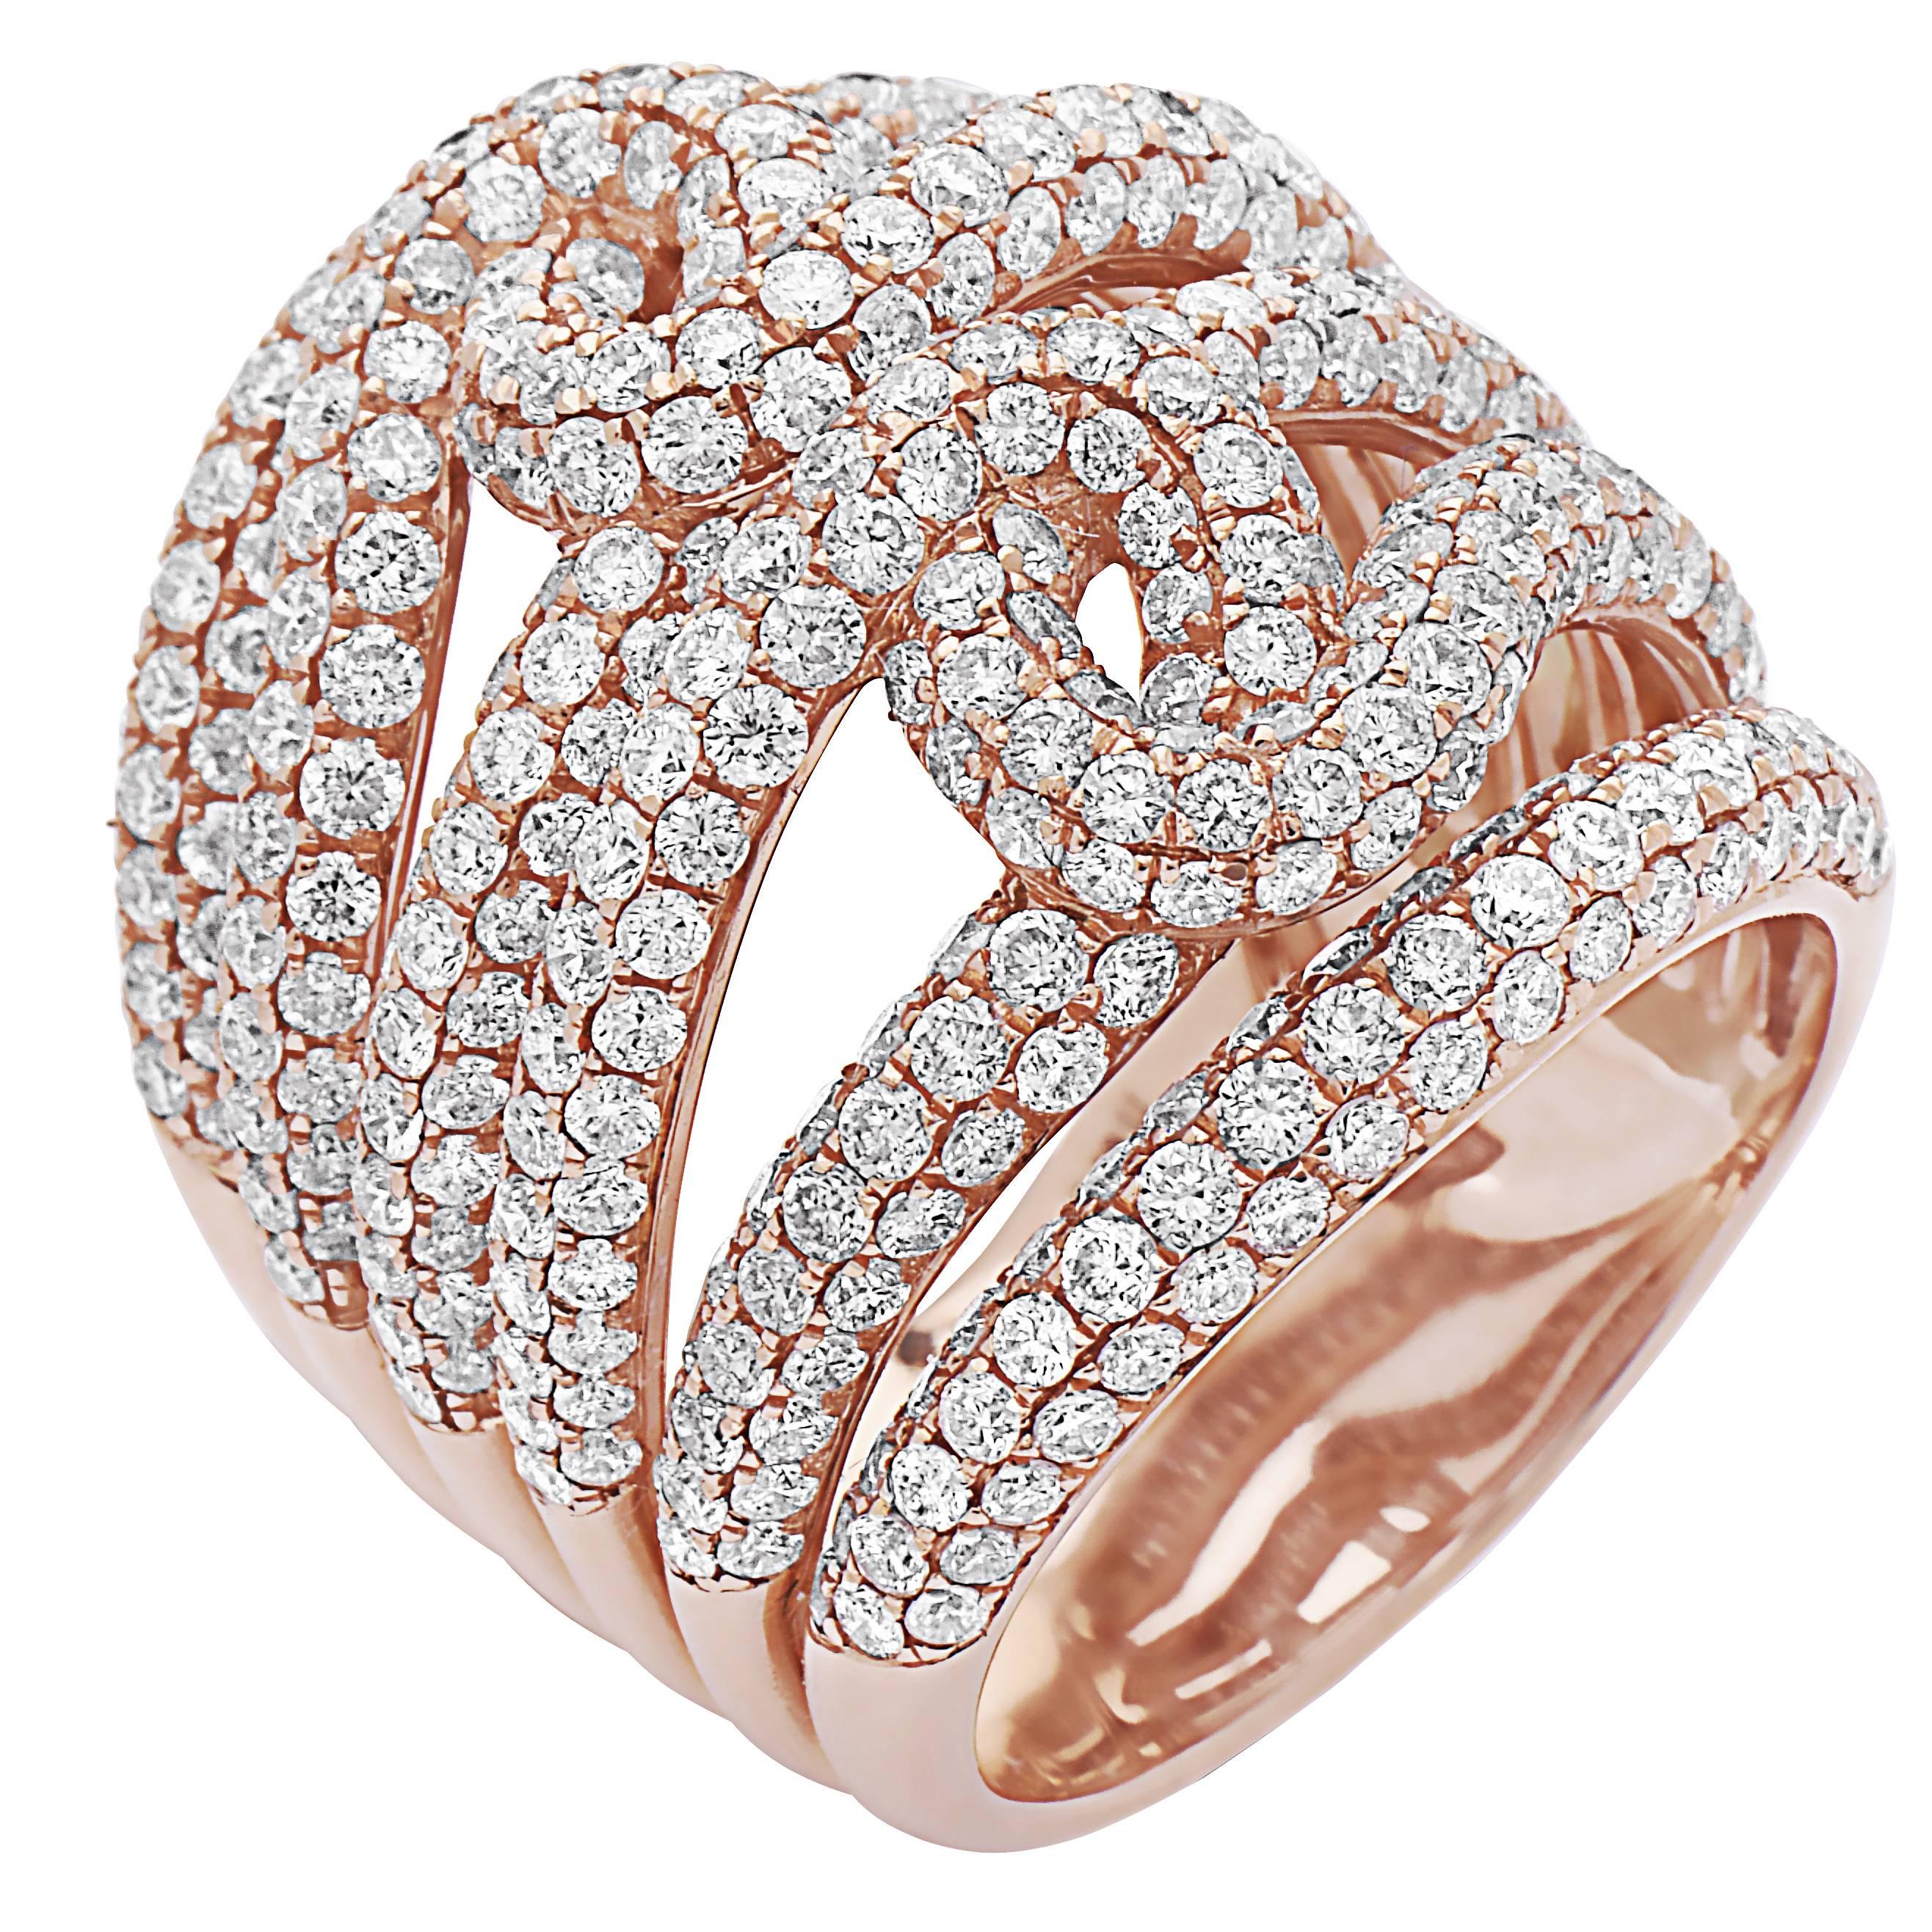 Emilio Jewelry 4.78 Carat 18 Karat Rose Gold Micro Pave Ring